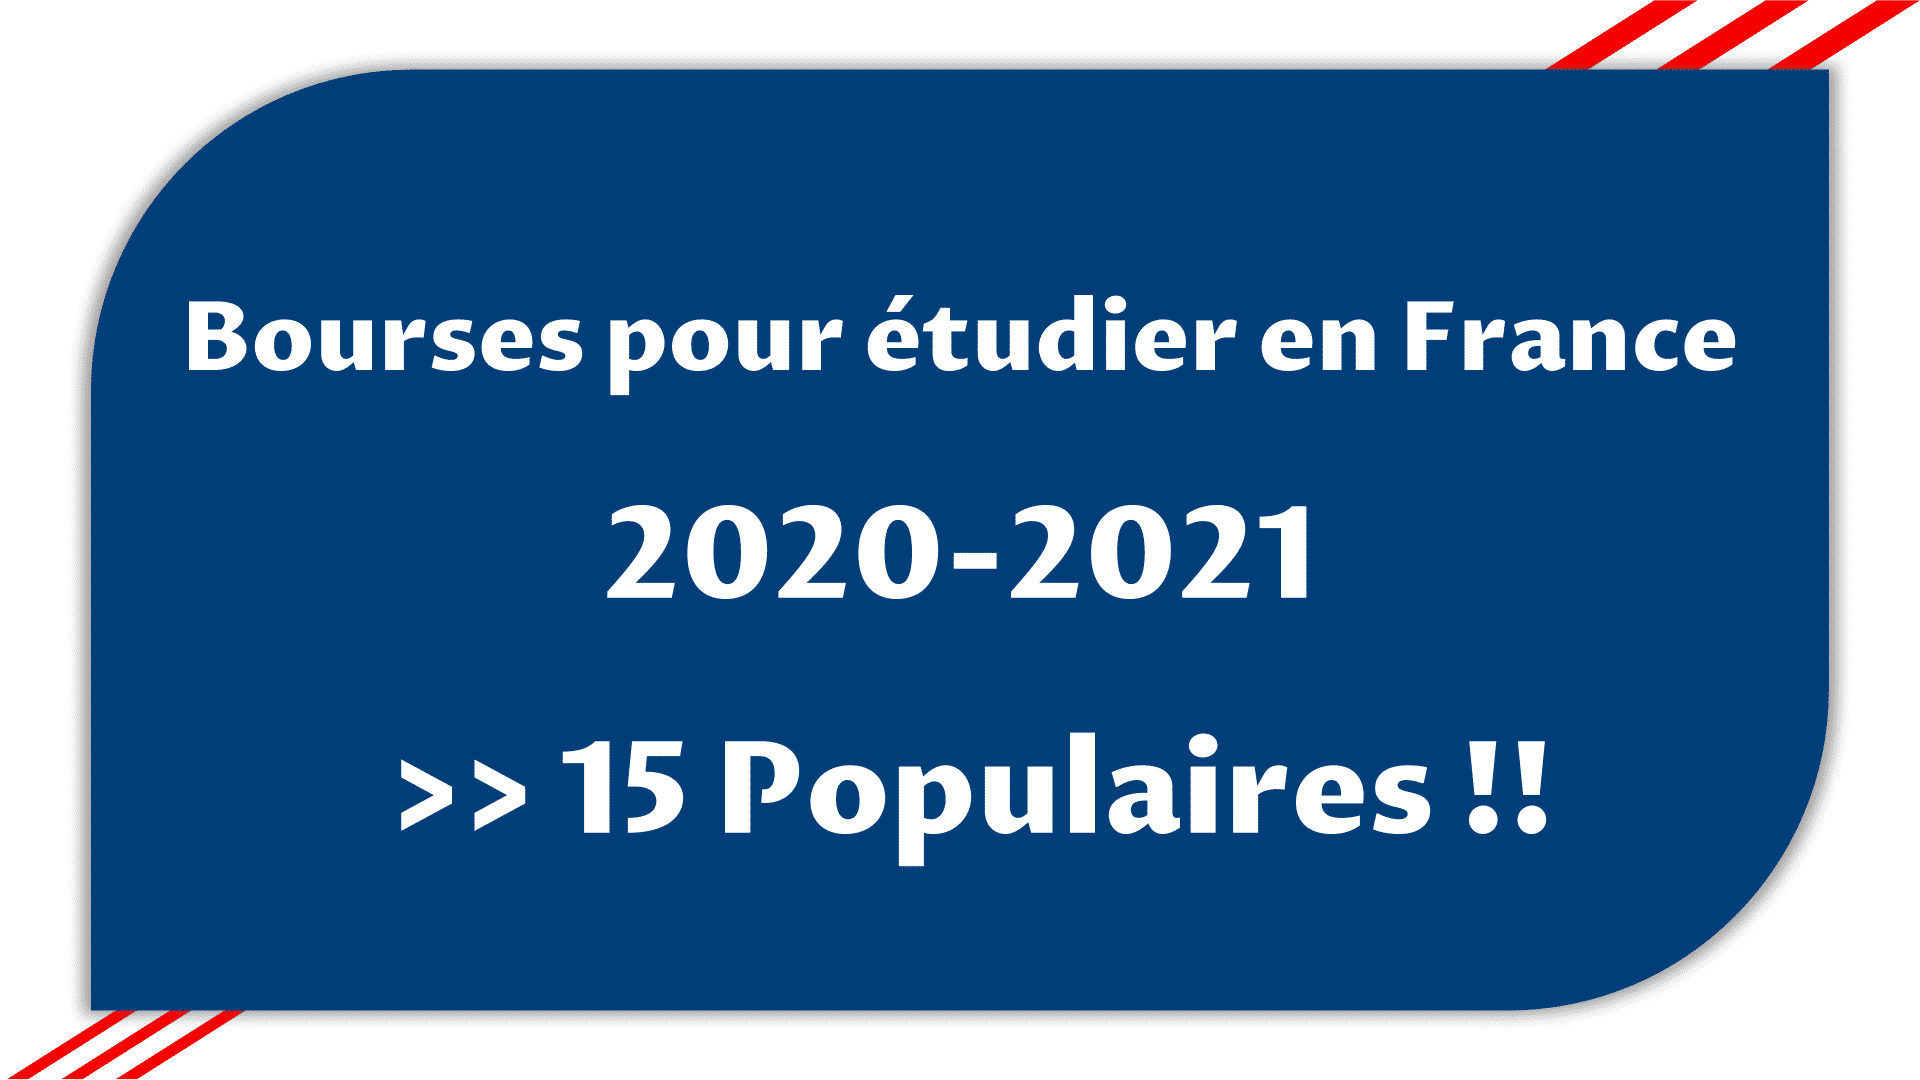 Bourses pour étudier en France 2019 et 2020-2021 - Les 15 